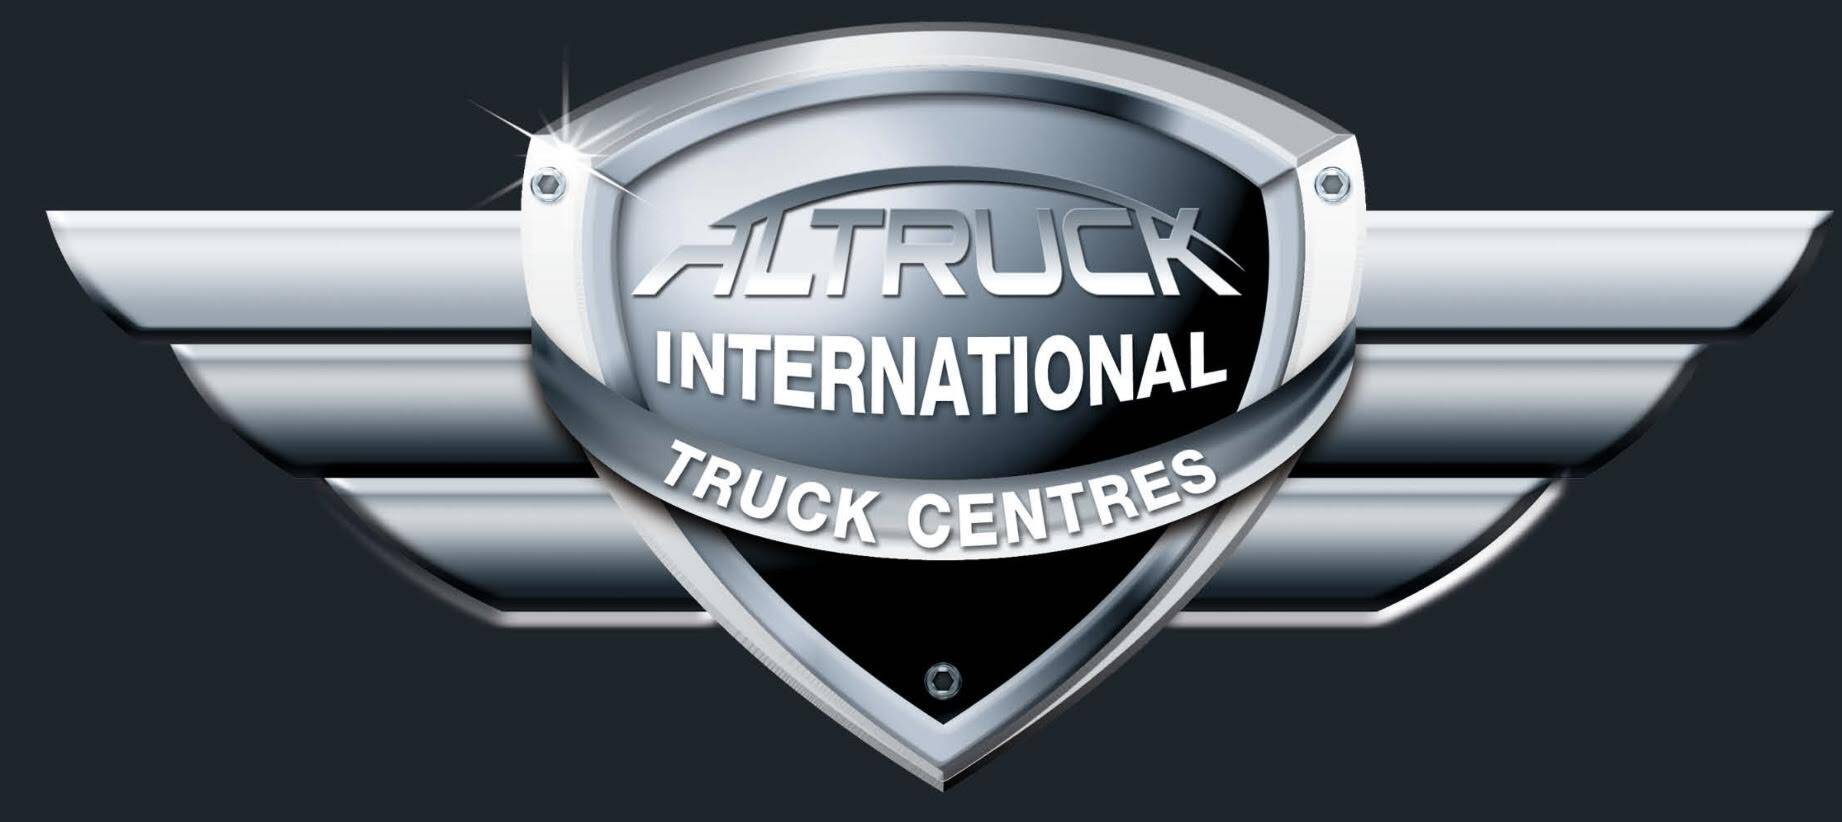 Altruck International Truck Centres